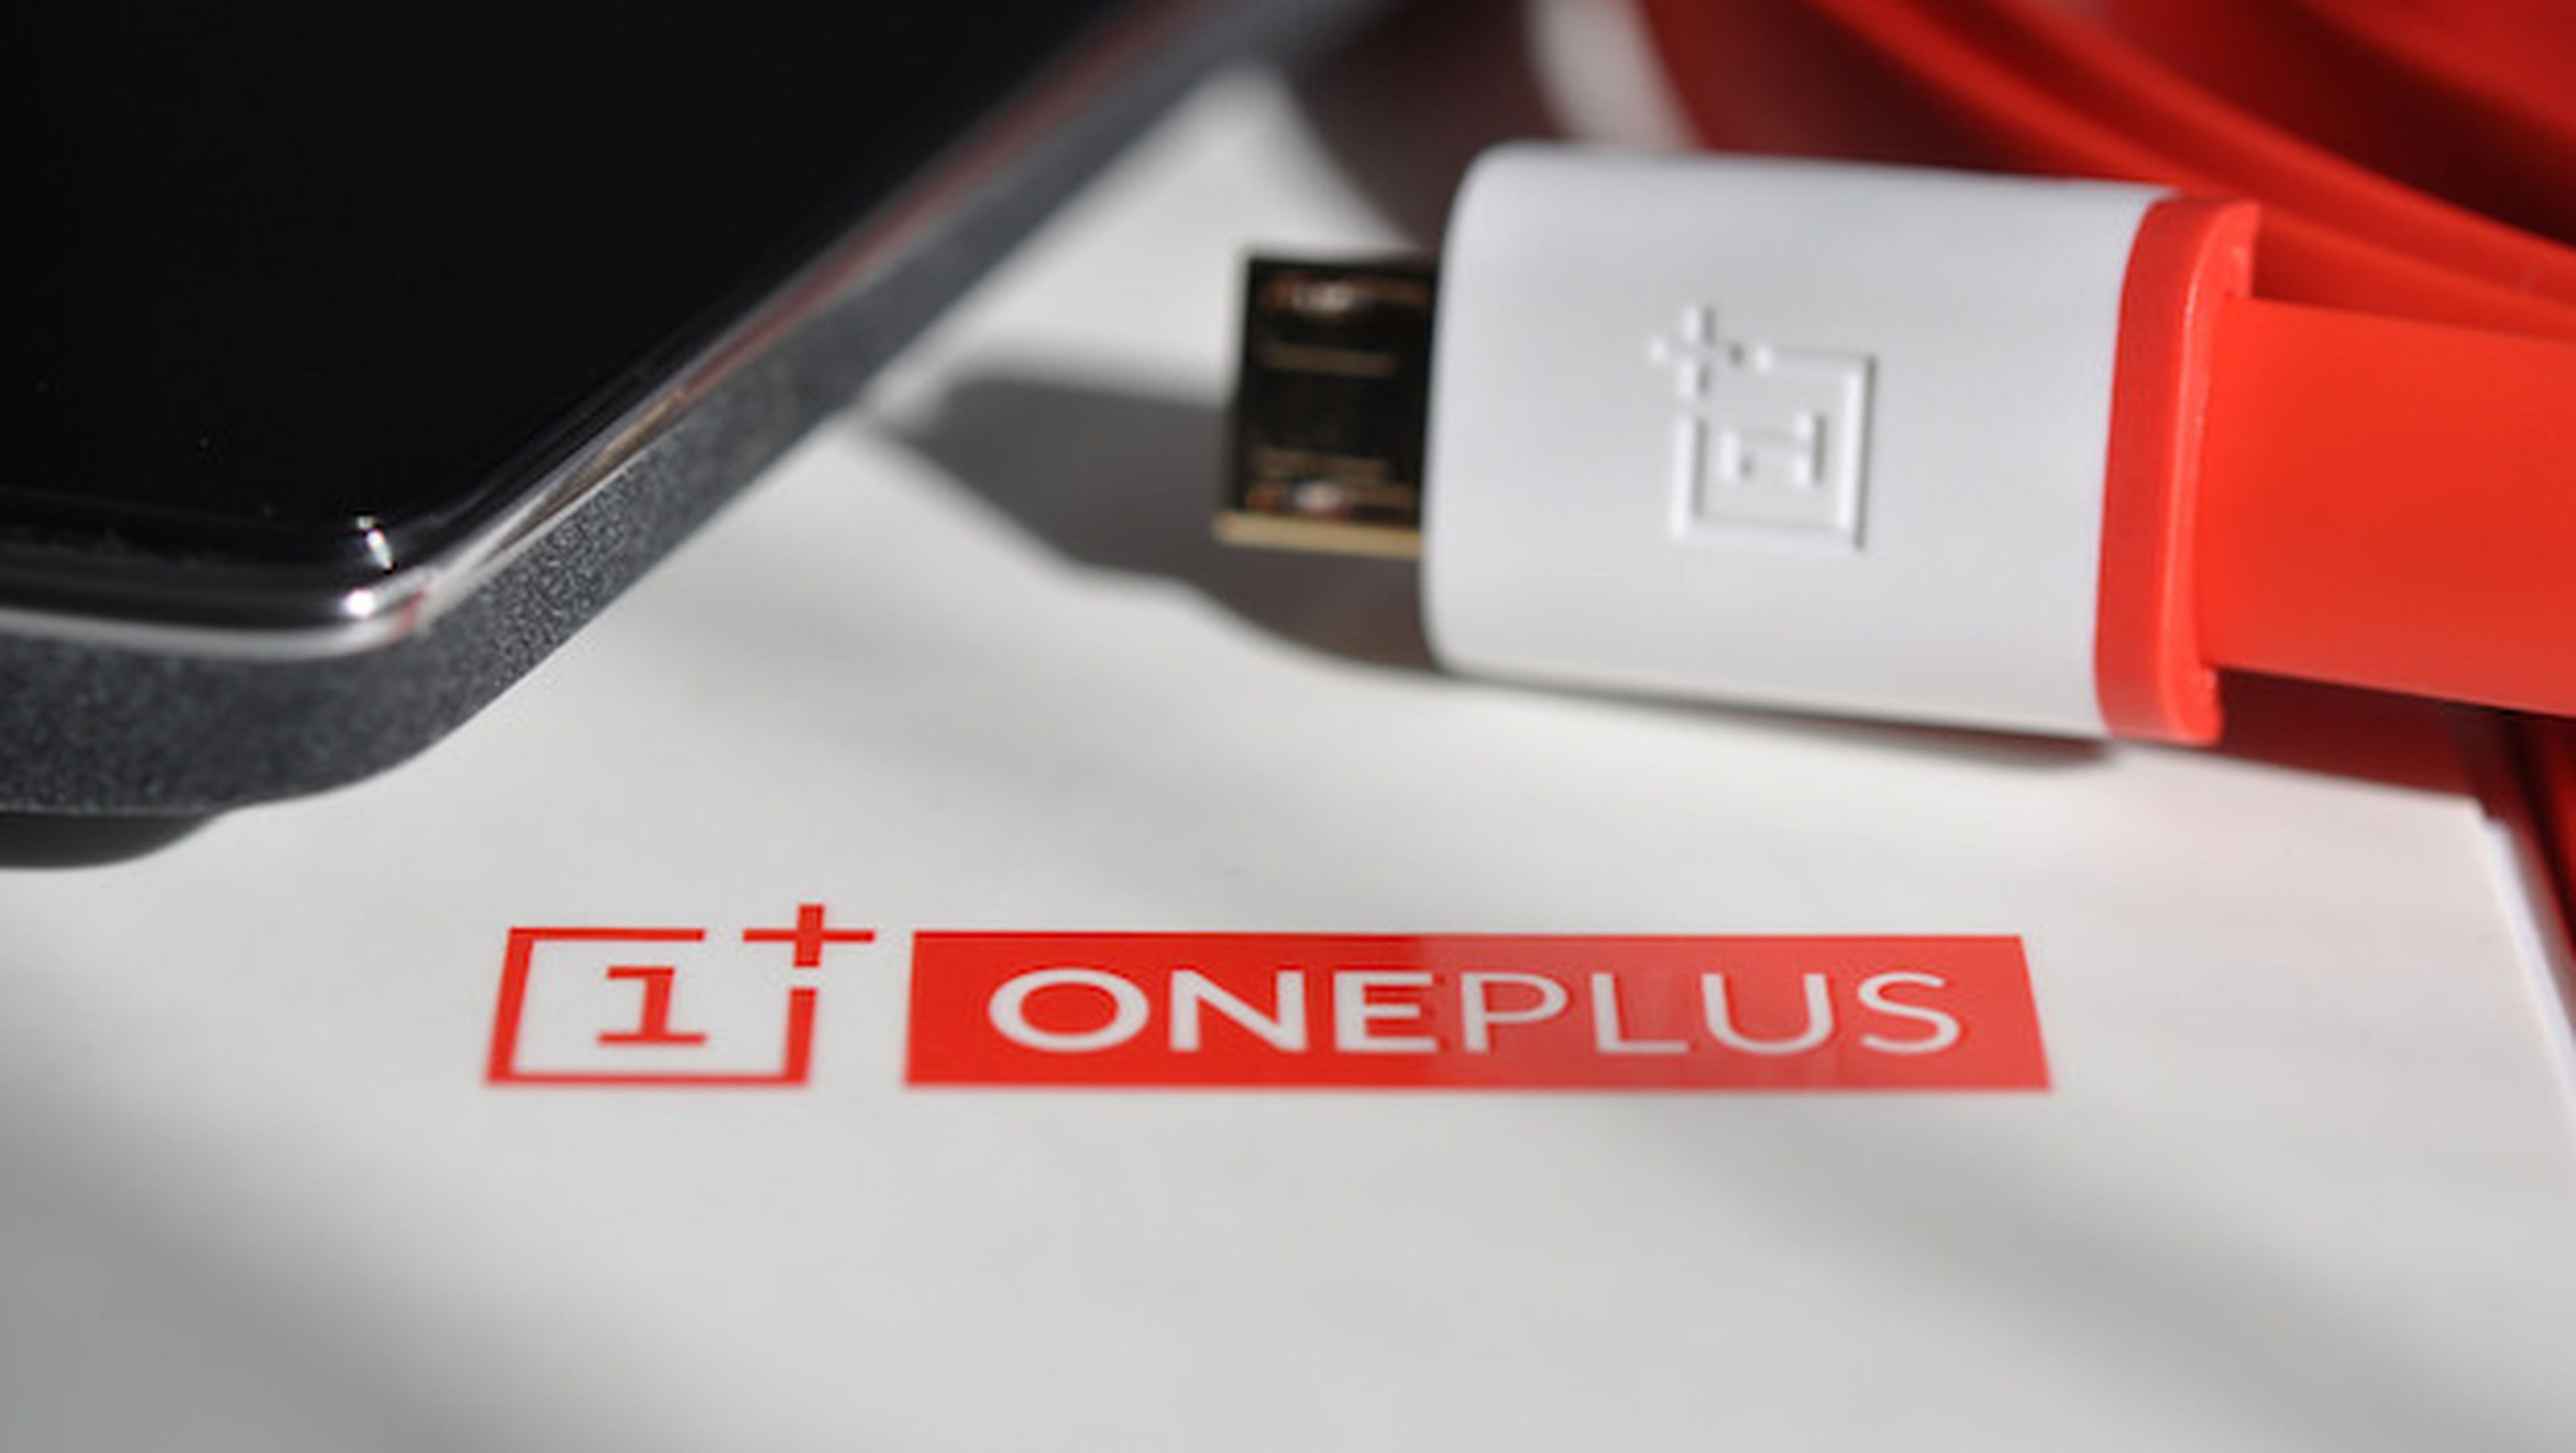 OnePlus X, se filtran especificaciones antes de su lanzamiento